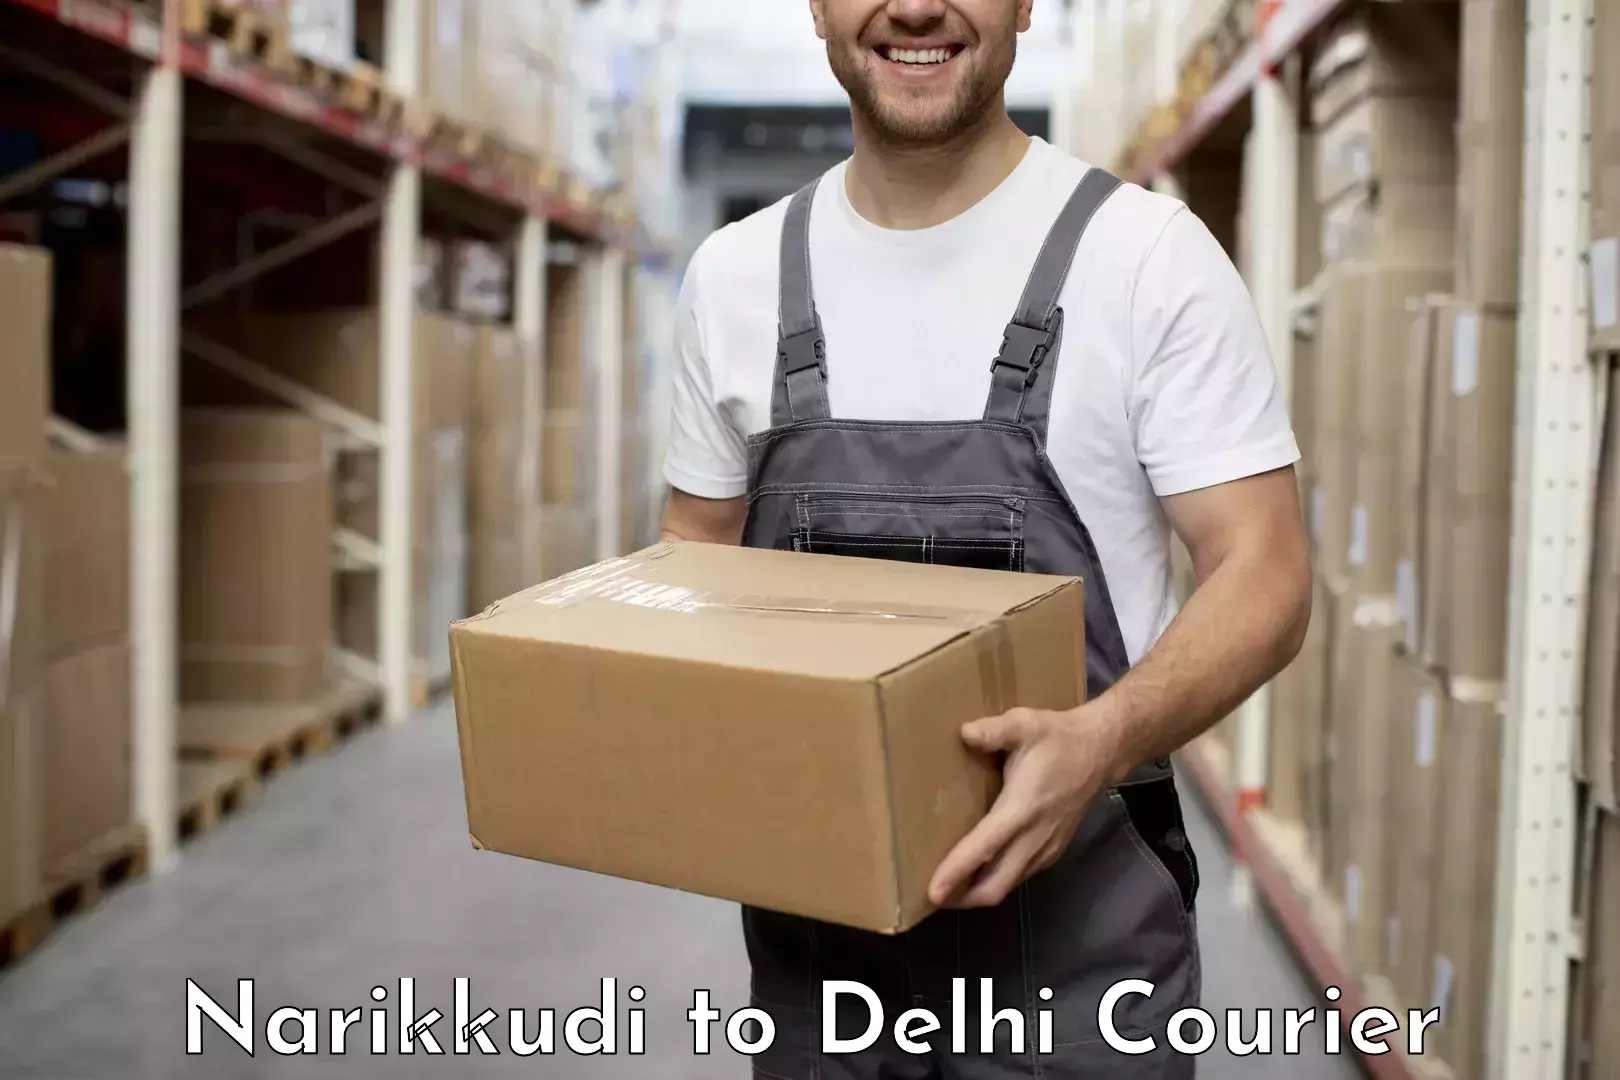 Remote area delivery Narikkudi to University of Delhi